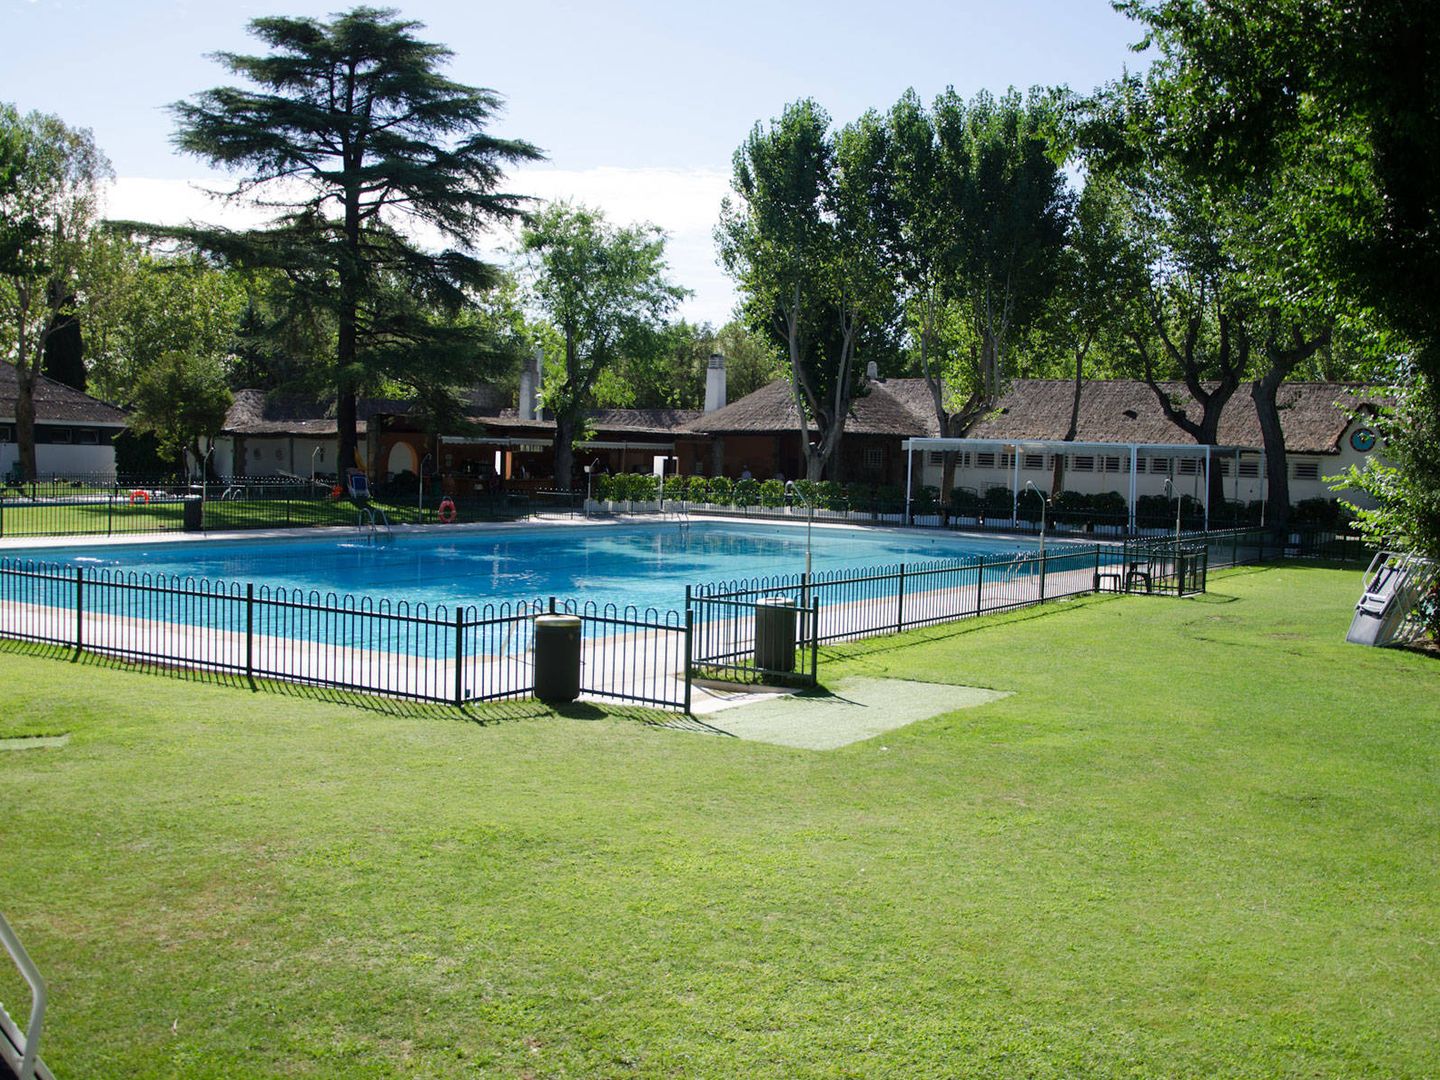 Una de las piscinas del Club de Campo Villa de Madrid.